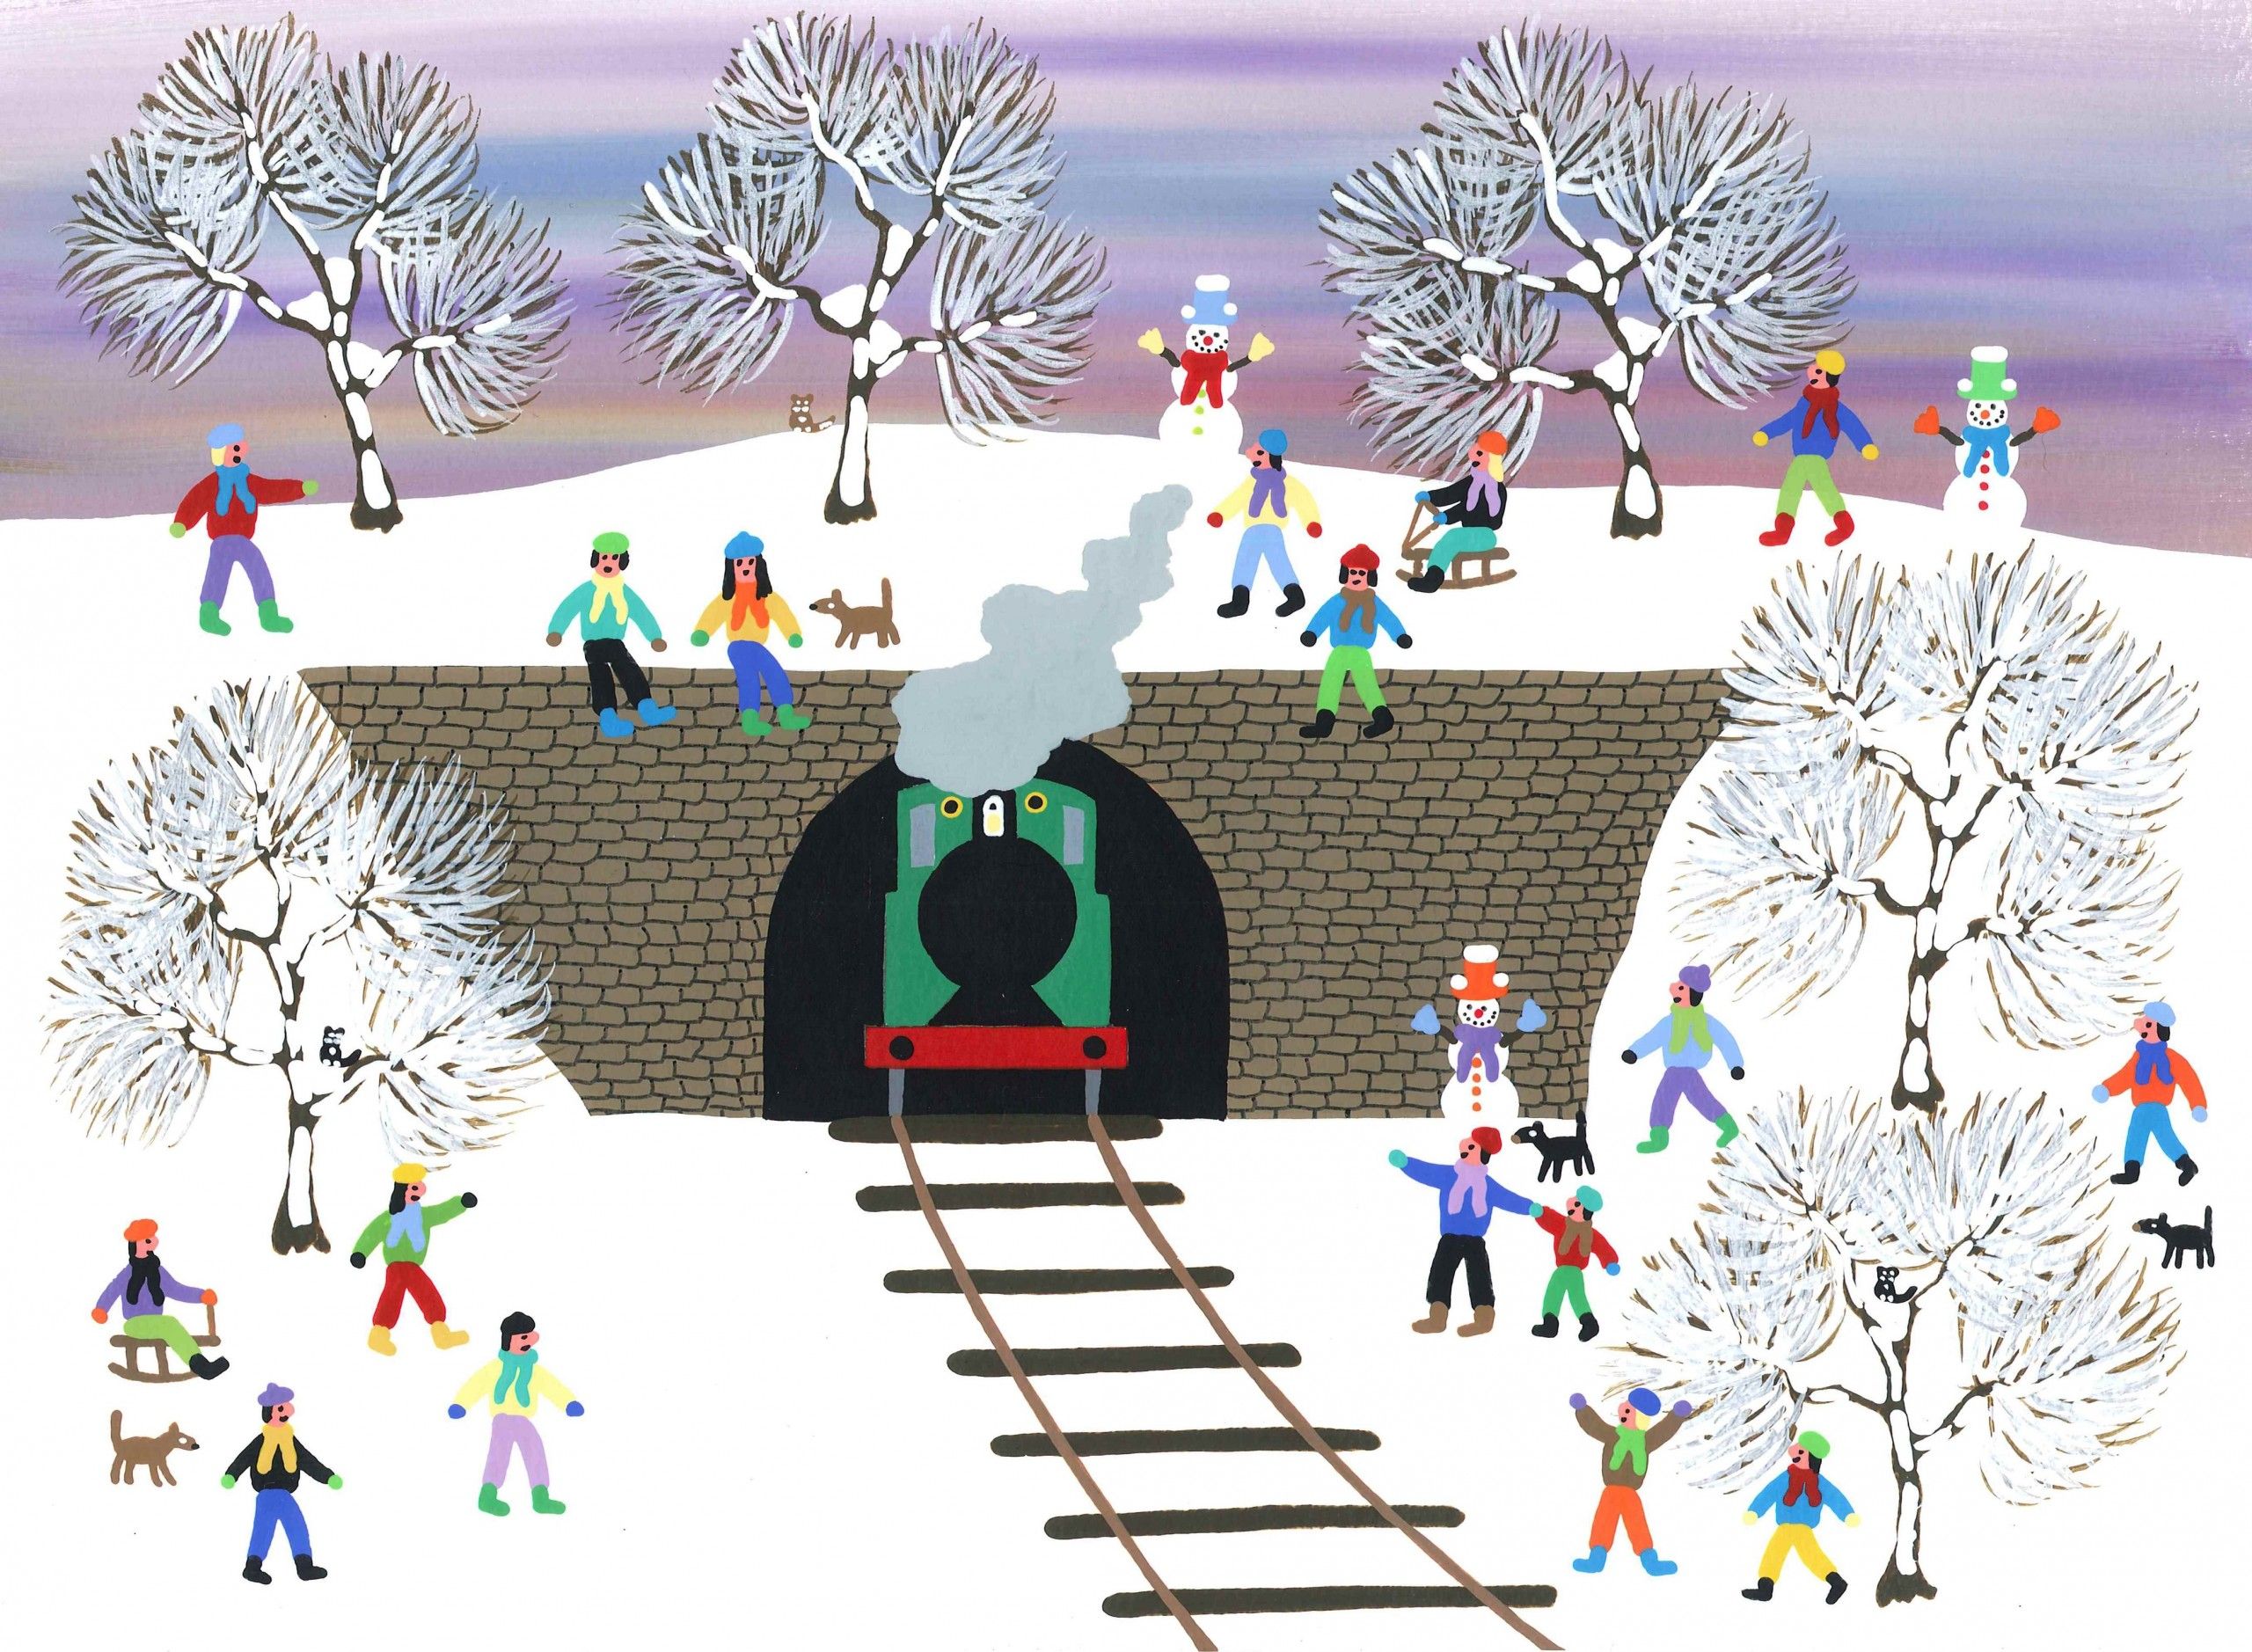 Steam train in tunnel by Gordon Barker